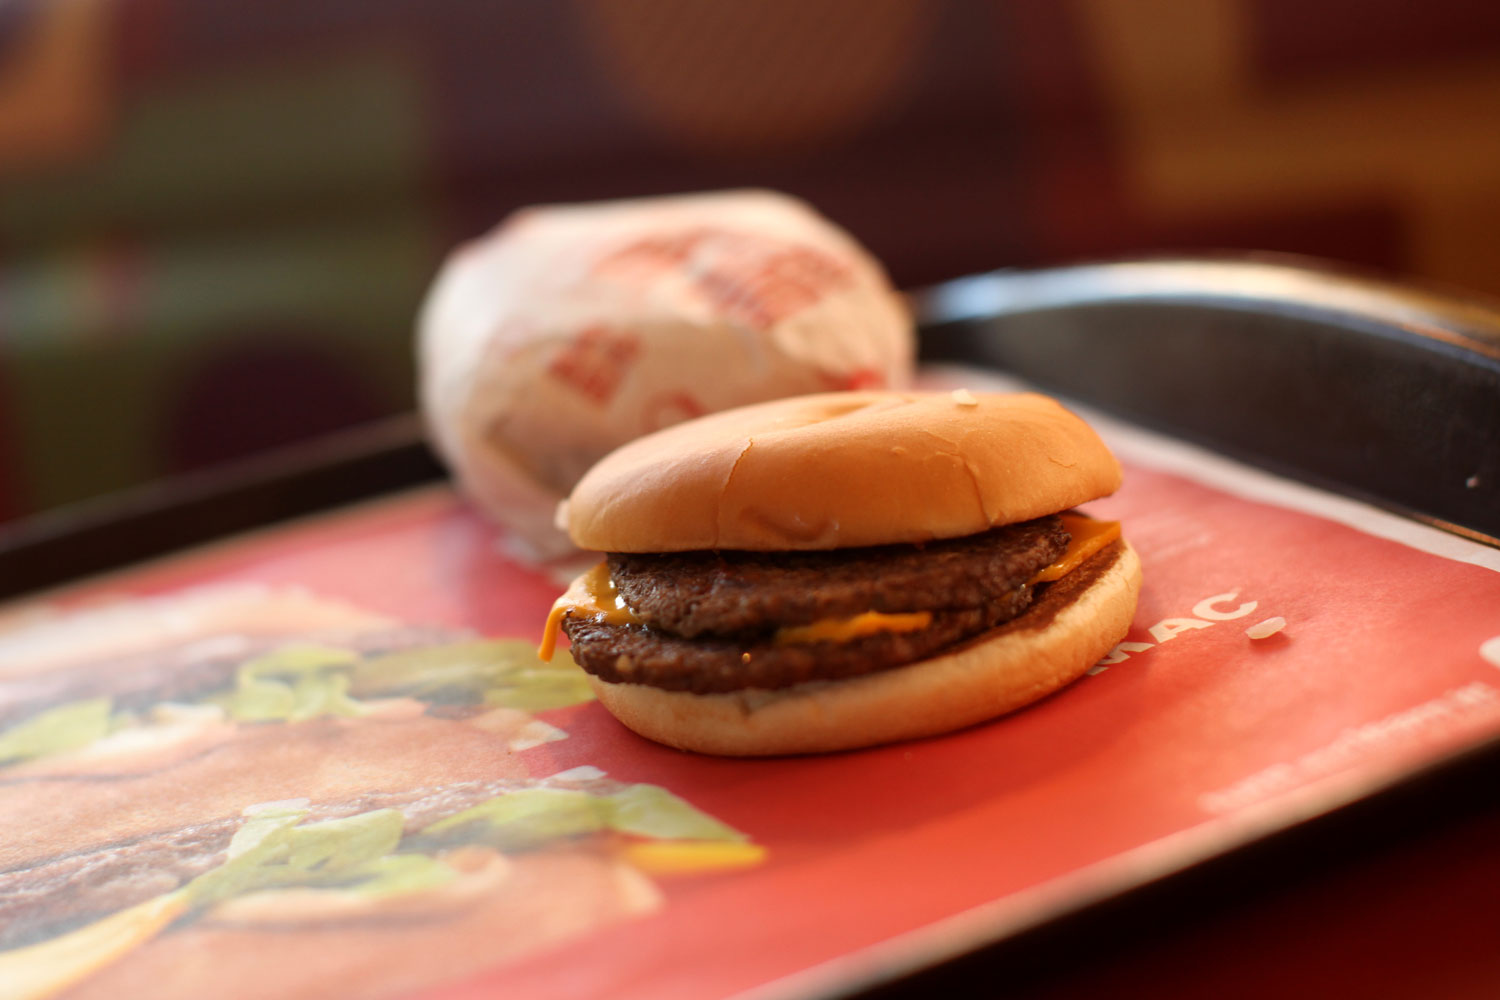 La justicia chilena multa a McDonald's por el hallazgo de una cola de ratón en una hamburguesa